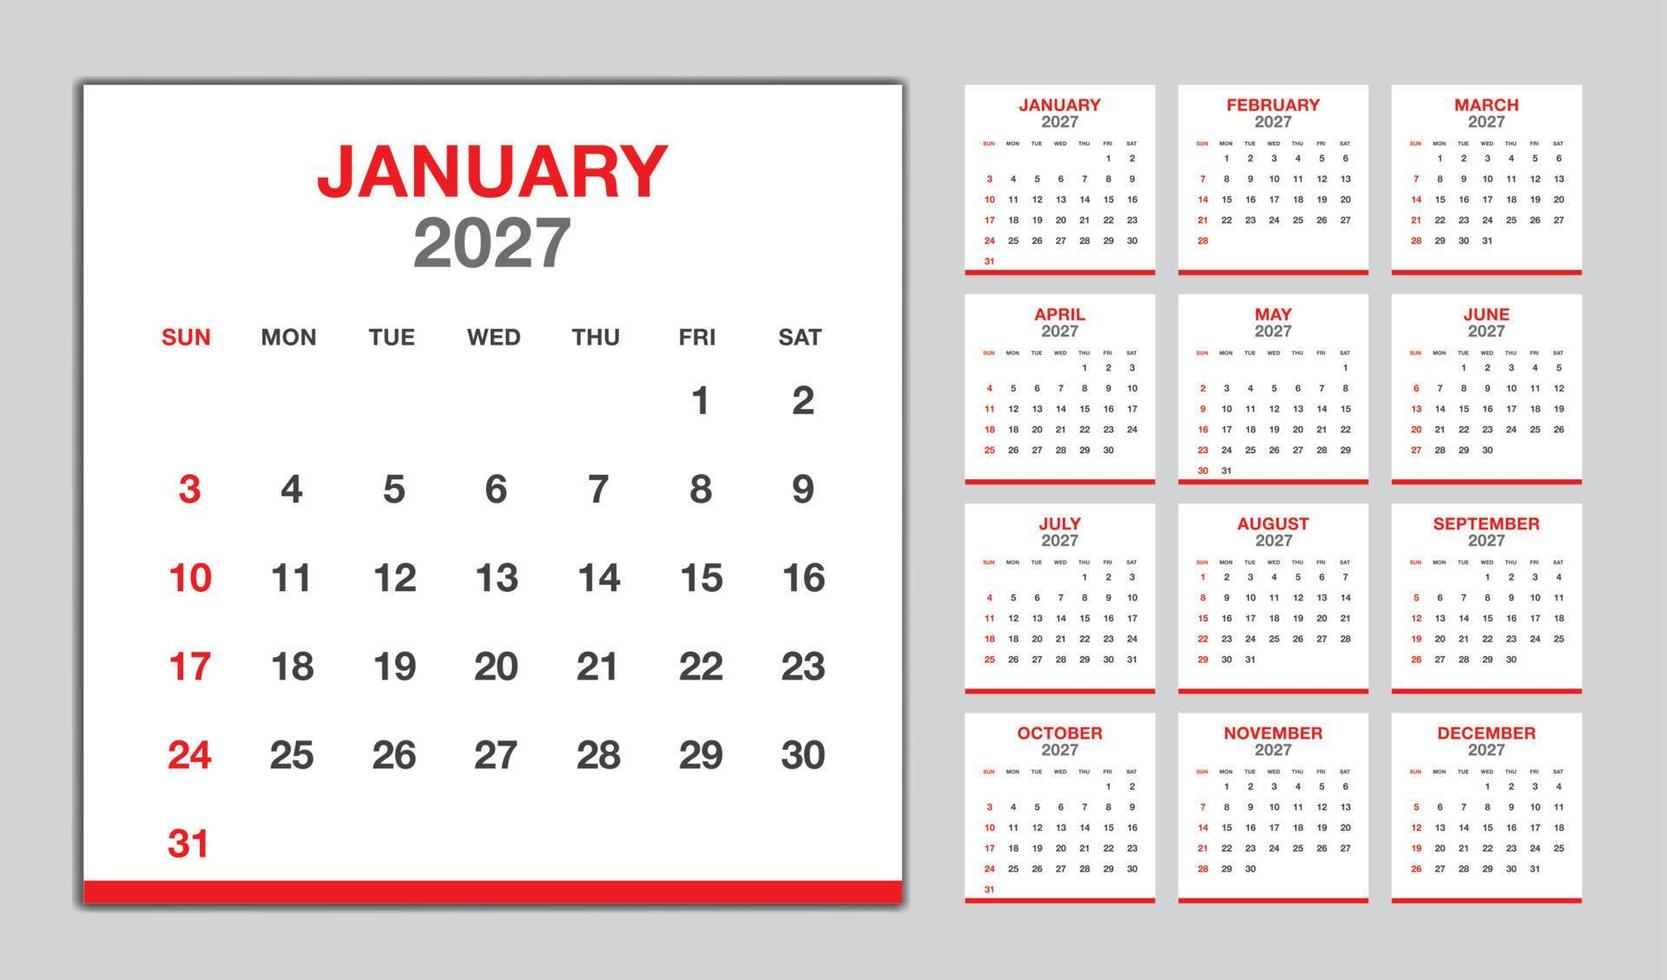 kalender 2027 år röd design, en gång i månaden kalender mall för 2027 år, vecka börjar på söndag, minimalistisk vägg kalender 2027 mall, planerare, företag mall vektor